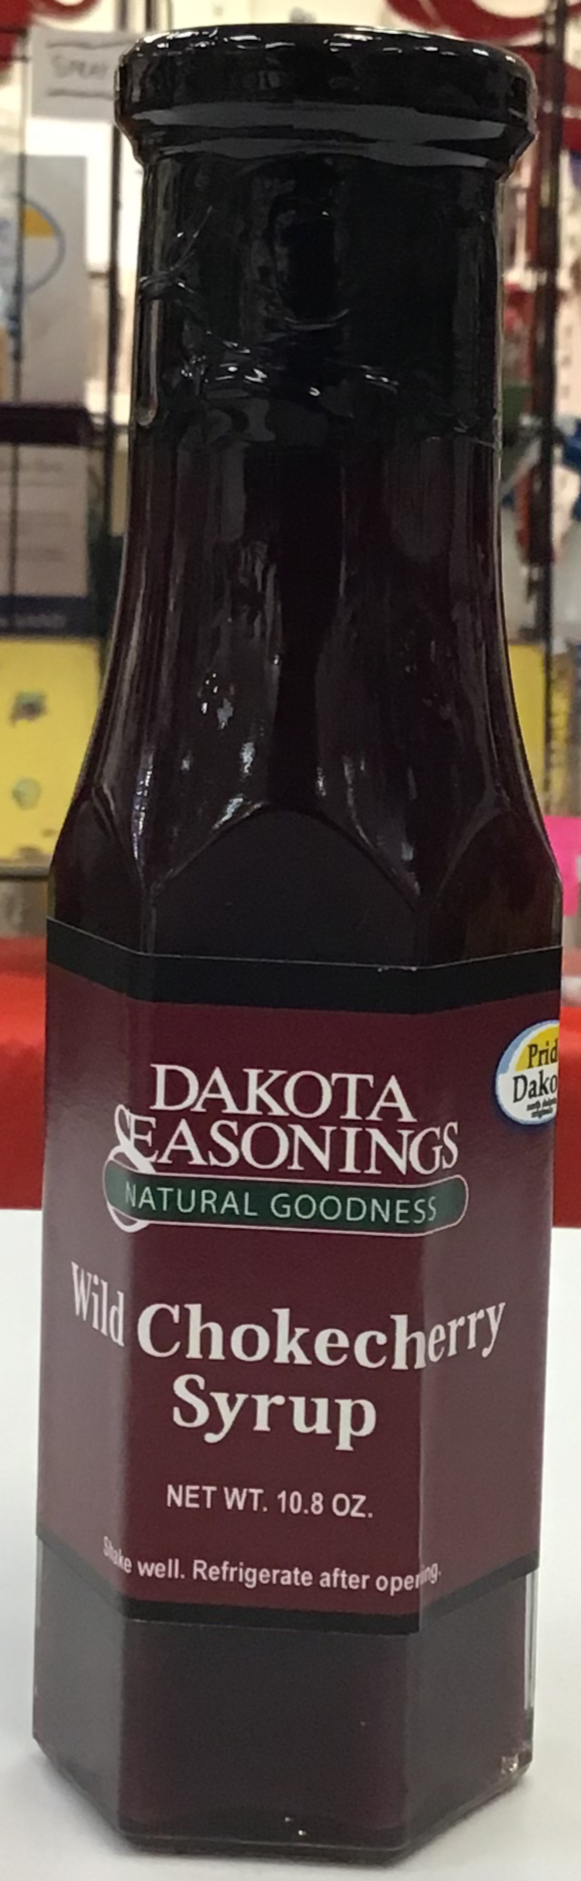 Dakota Seasonings Wild Chokecherry Syrup